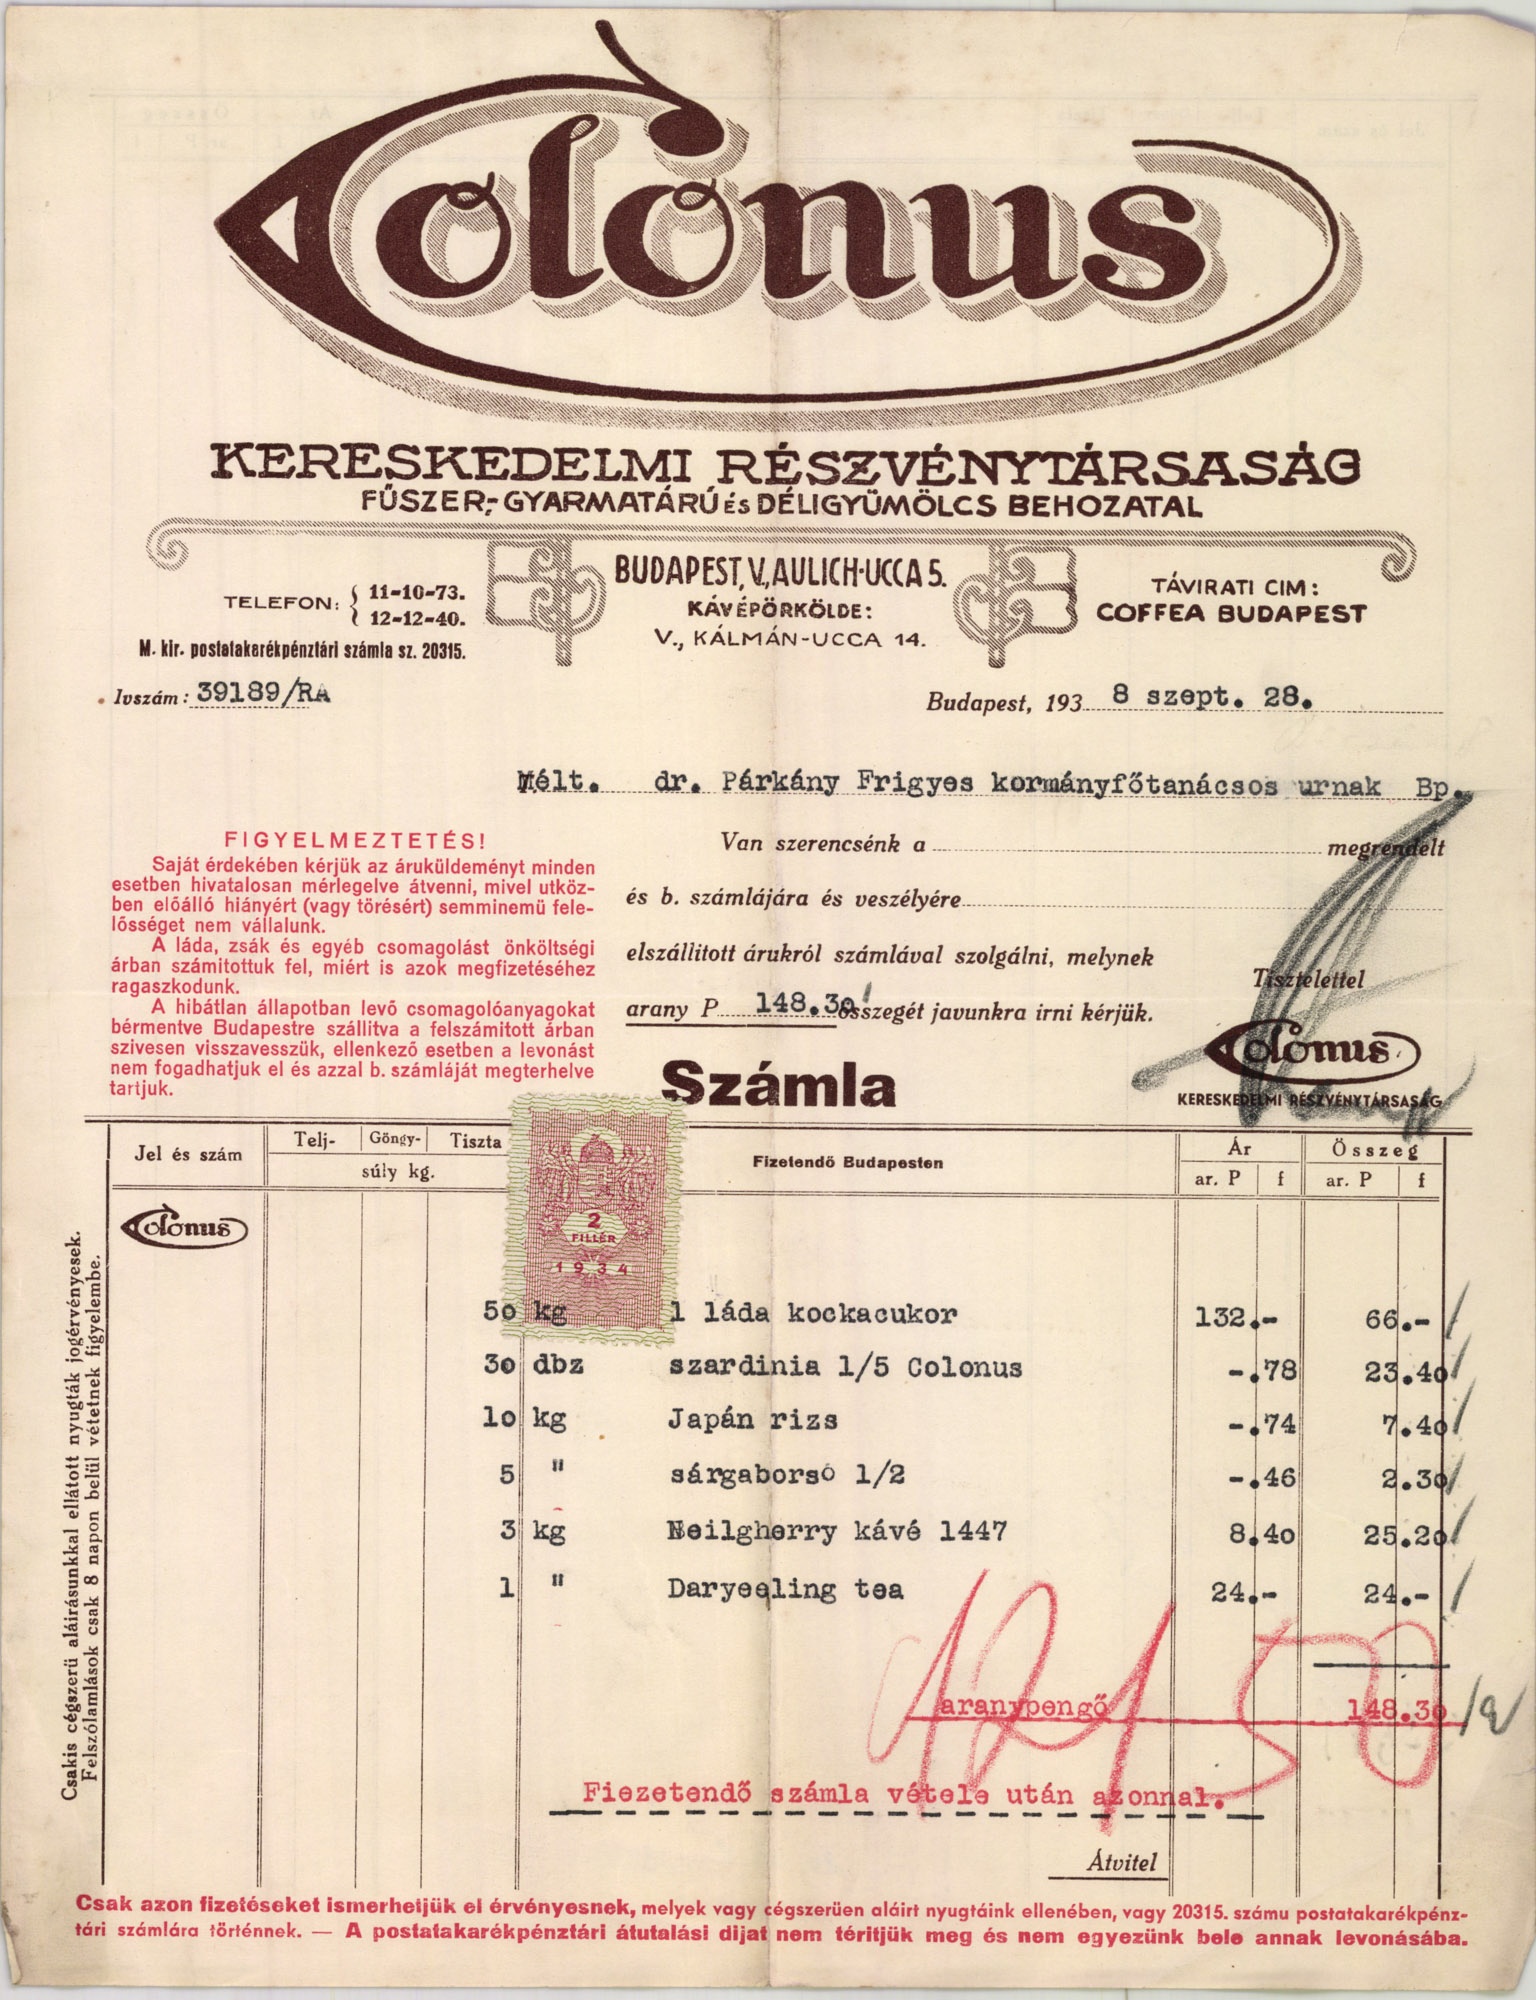 Colonus Kereskedelmi Részvénytársaság fűszer-, gyarmatáru- és déligyümölcs behozatal (Magyar Kereskedelmi és Vendéglátóipari Múzeum CC BY-NC-SA)